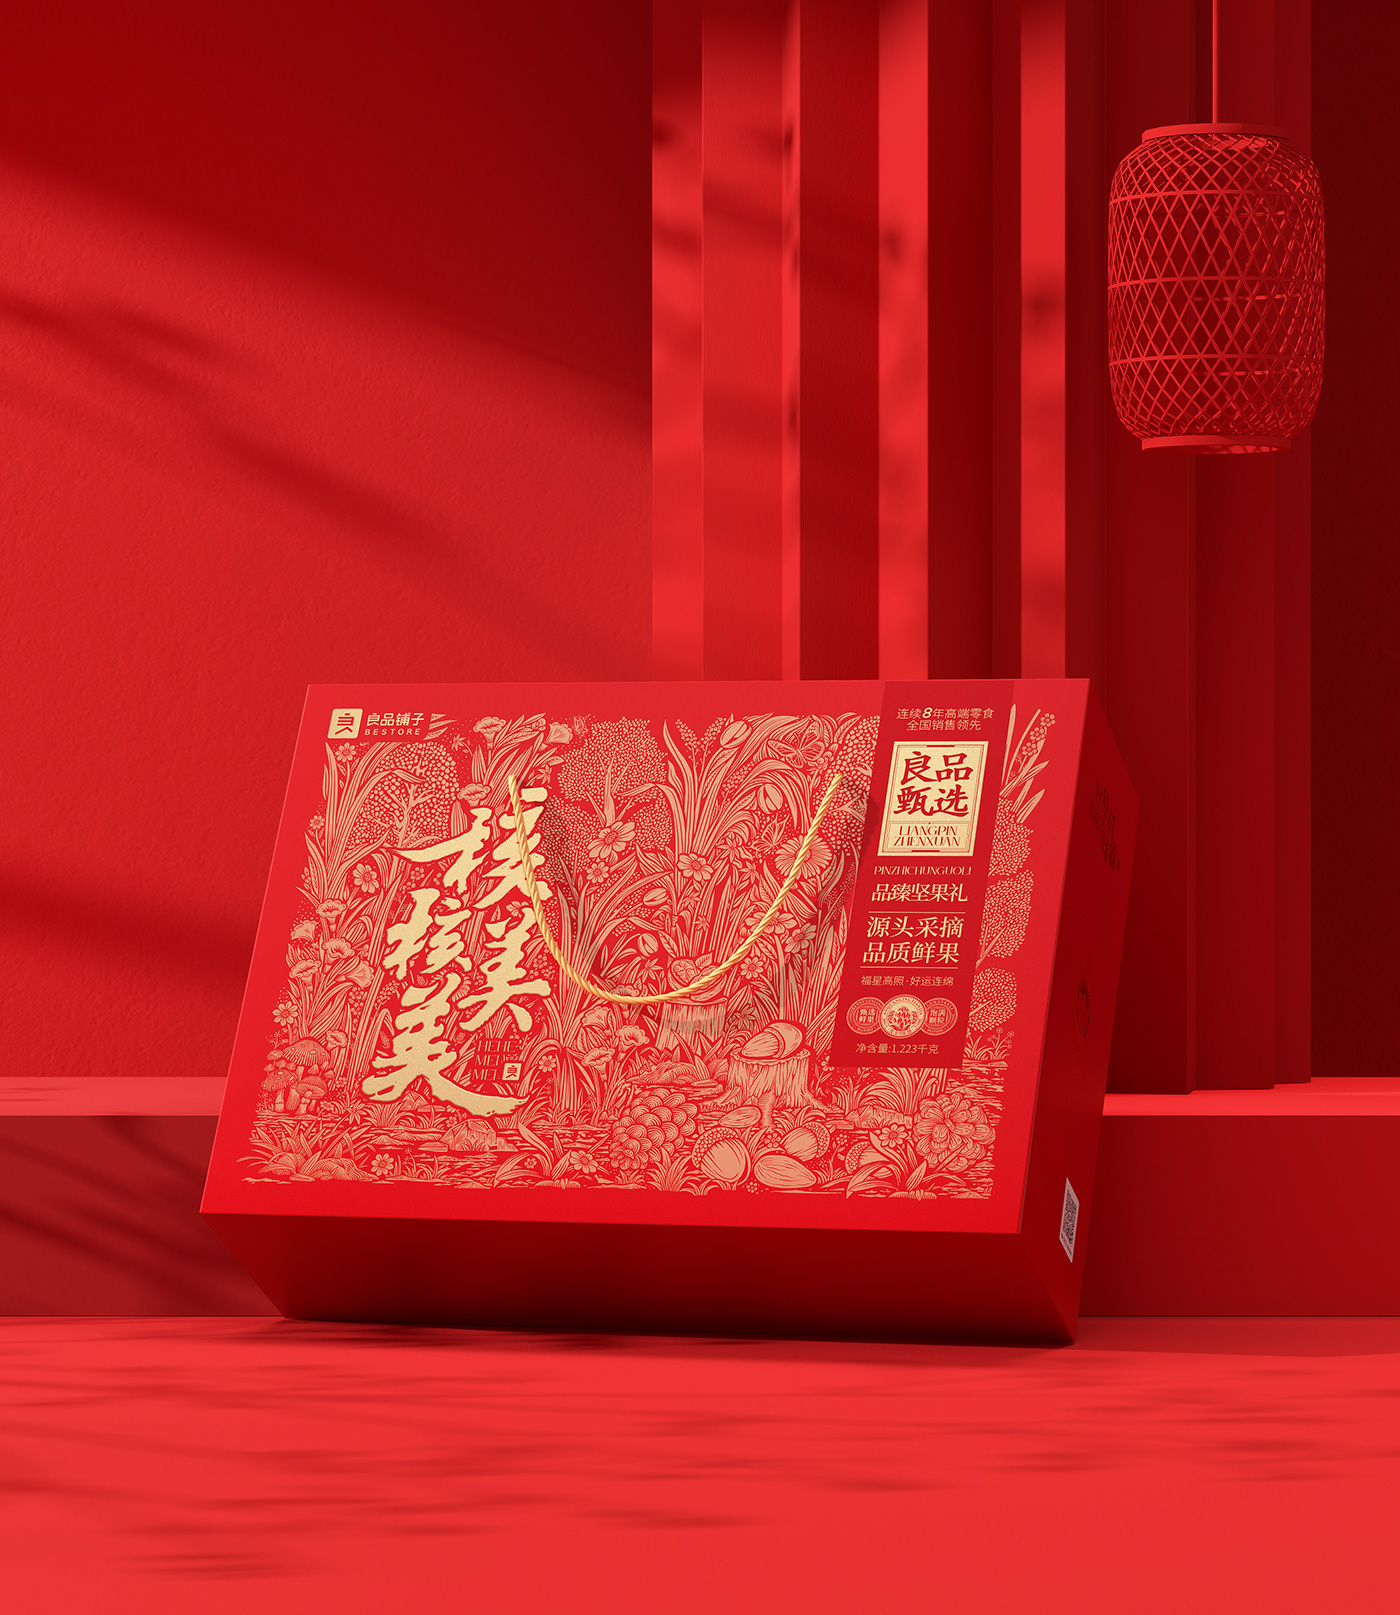 包装设计 packaging design 中国风插画 插画设计 插画 Illustration 商业插画 中国风   中国新年礼盒 包装设计 packaging design 礼盒设计、包装设计、创意、平面